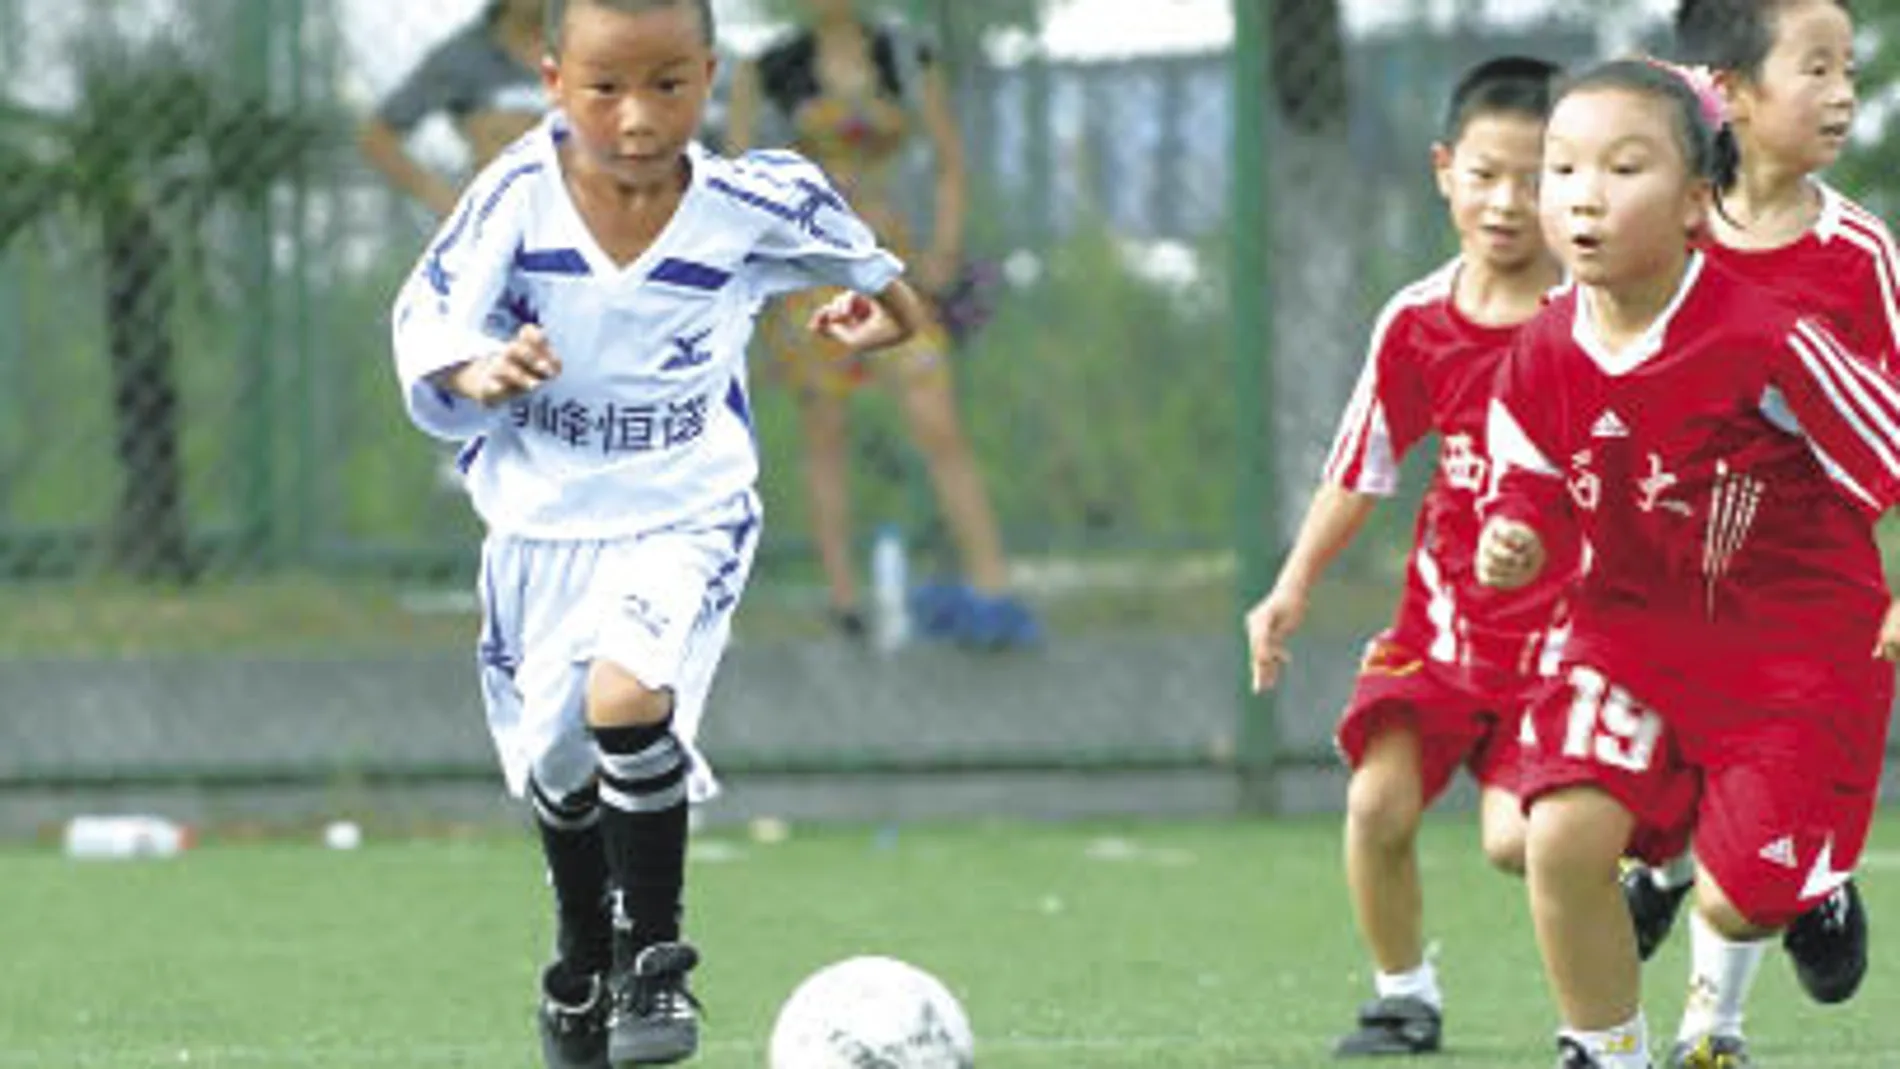 El fútbol será asignatura obligatoria para los niños chinos